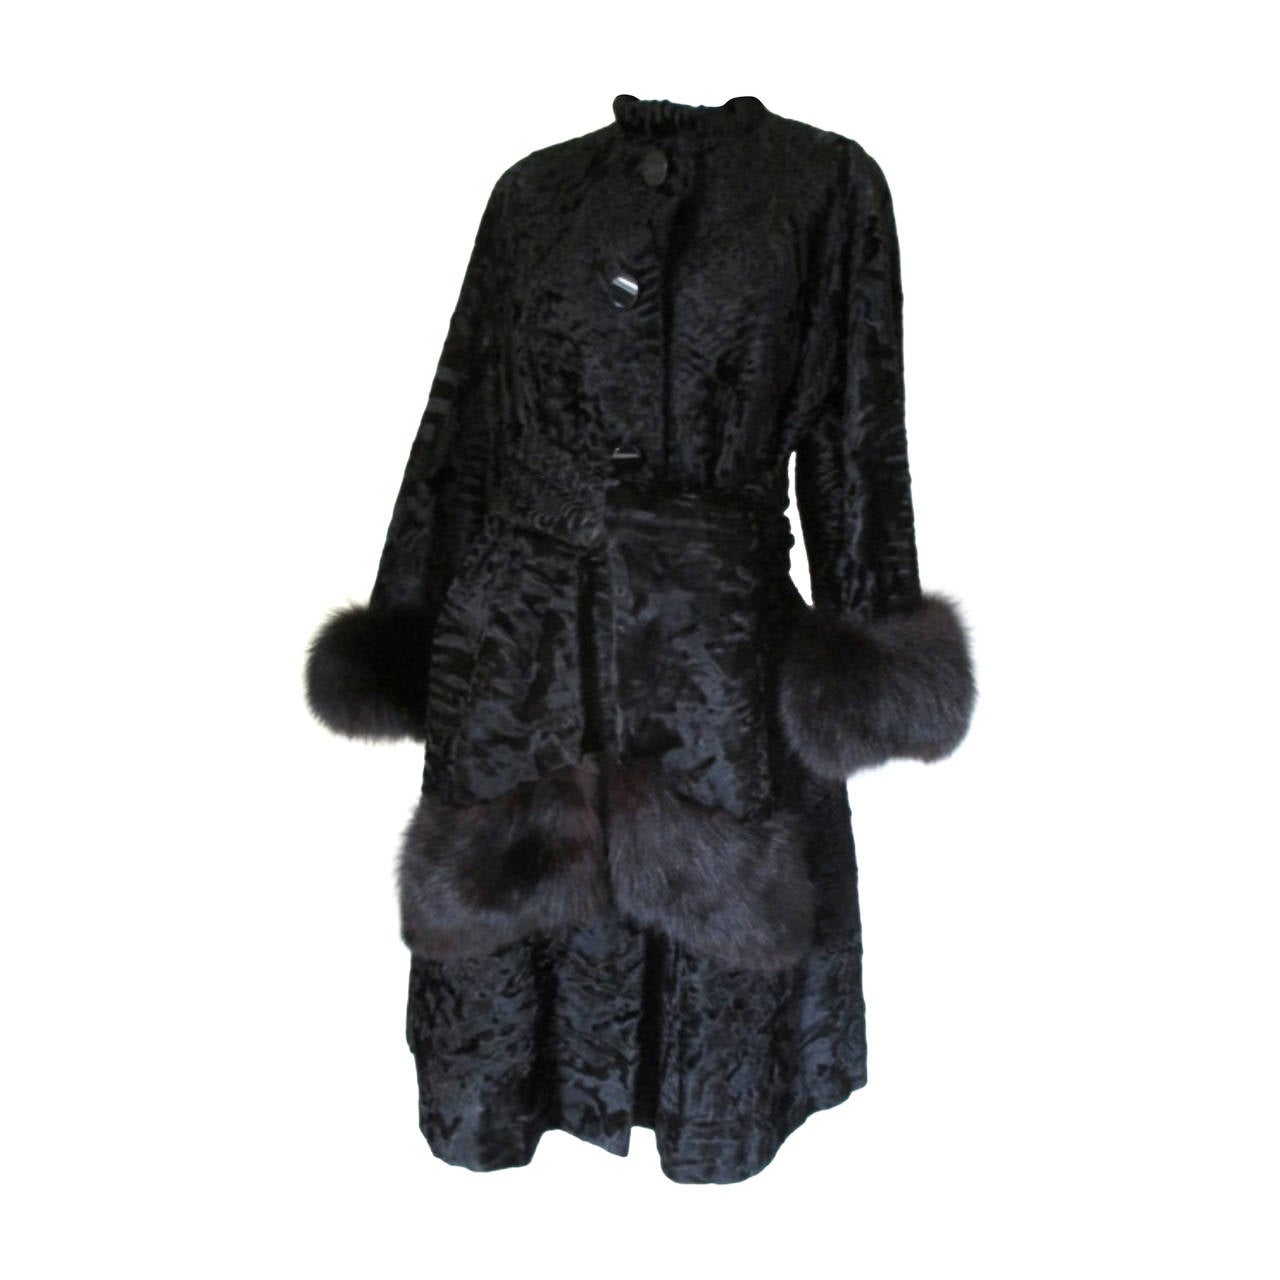 Elegant black Persian lamb/astrakhan fur coat with fox